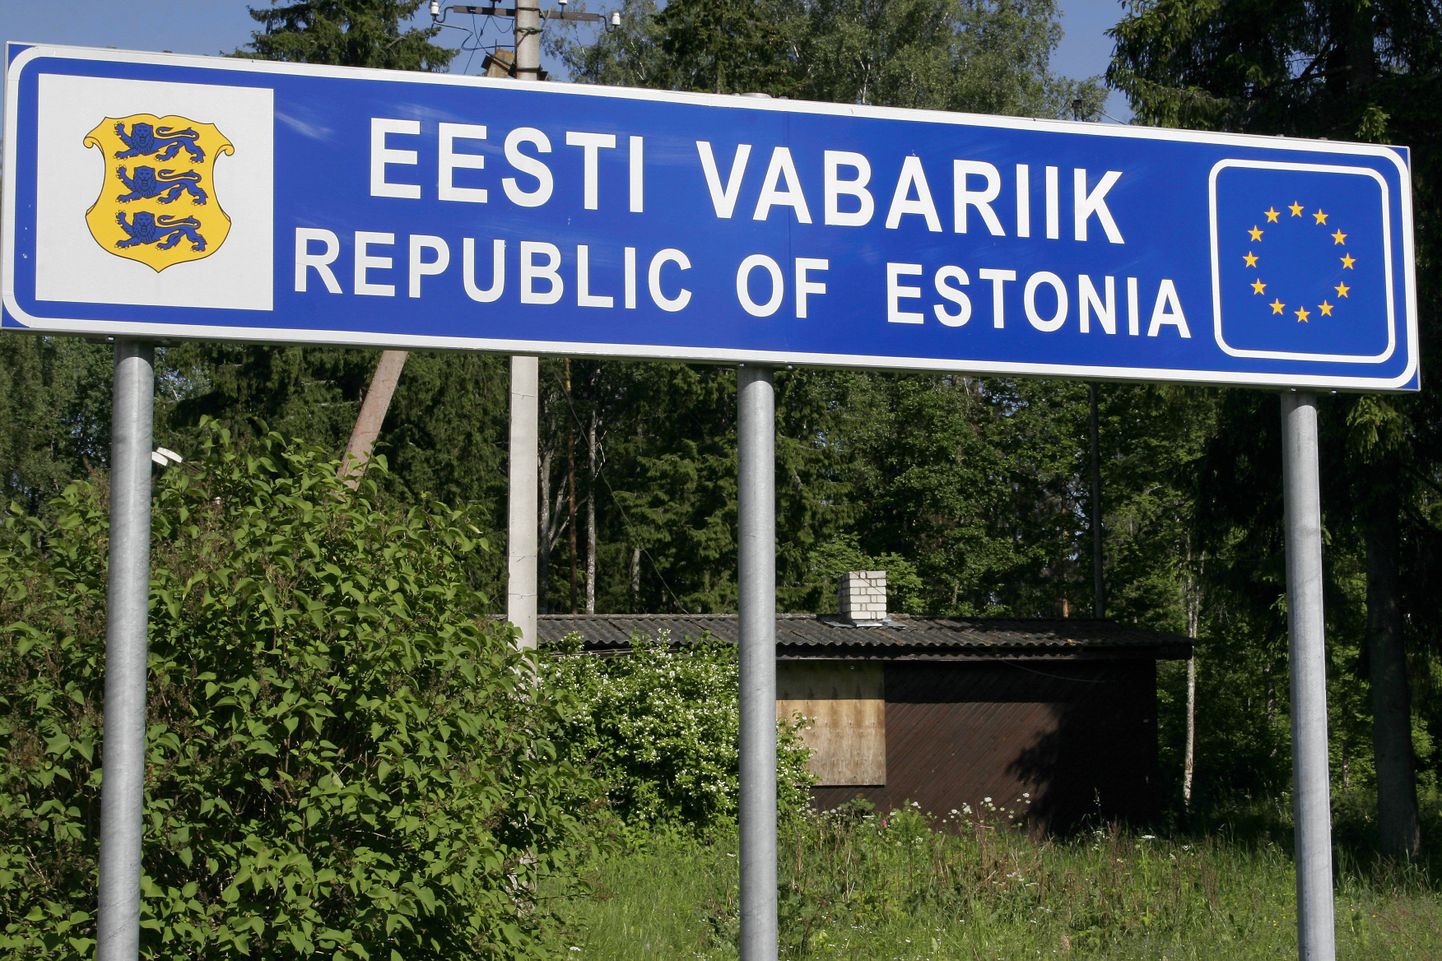 Indrek Jõgi sõnul on inimsmugeldamise kanalid Eestis õnnestunud sulgeda.